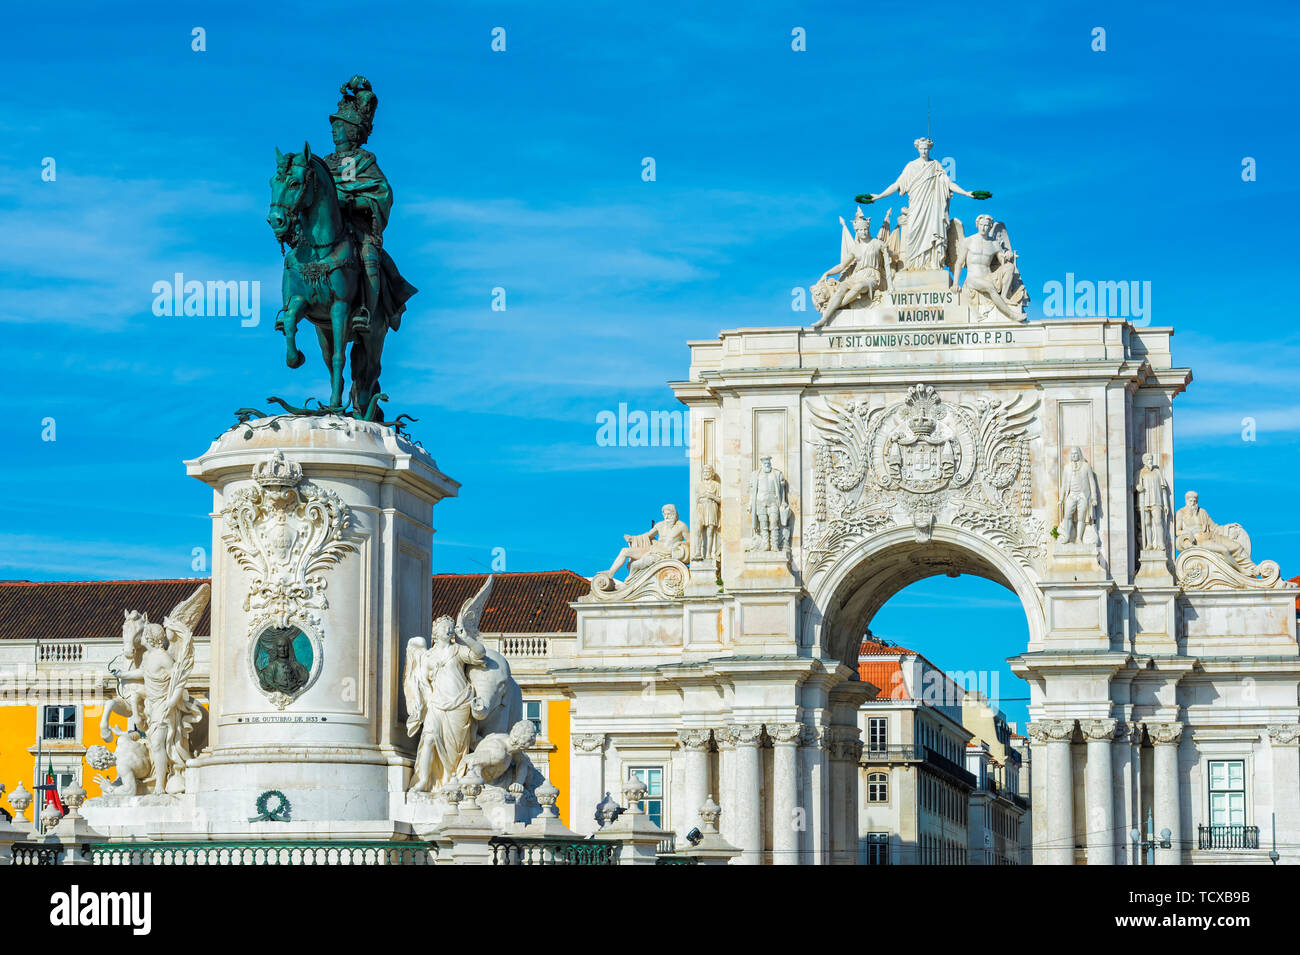 Praca do Comercio square, King Jose JE Statue équestre et Augusta Street Triumph Arch, Lisbonne, Portugal, Europe Banque D'Images